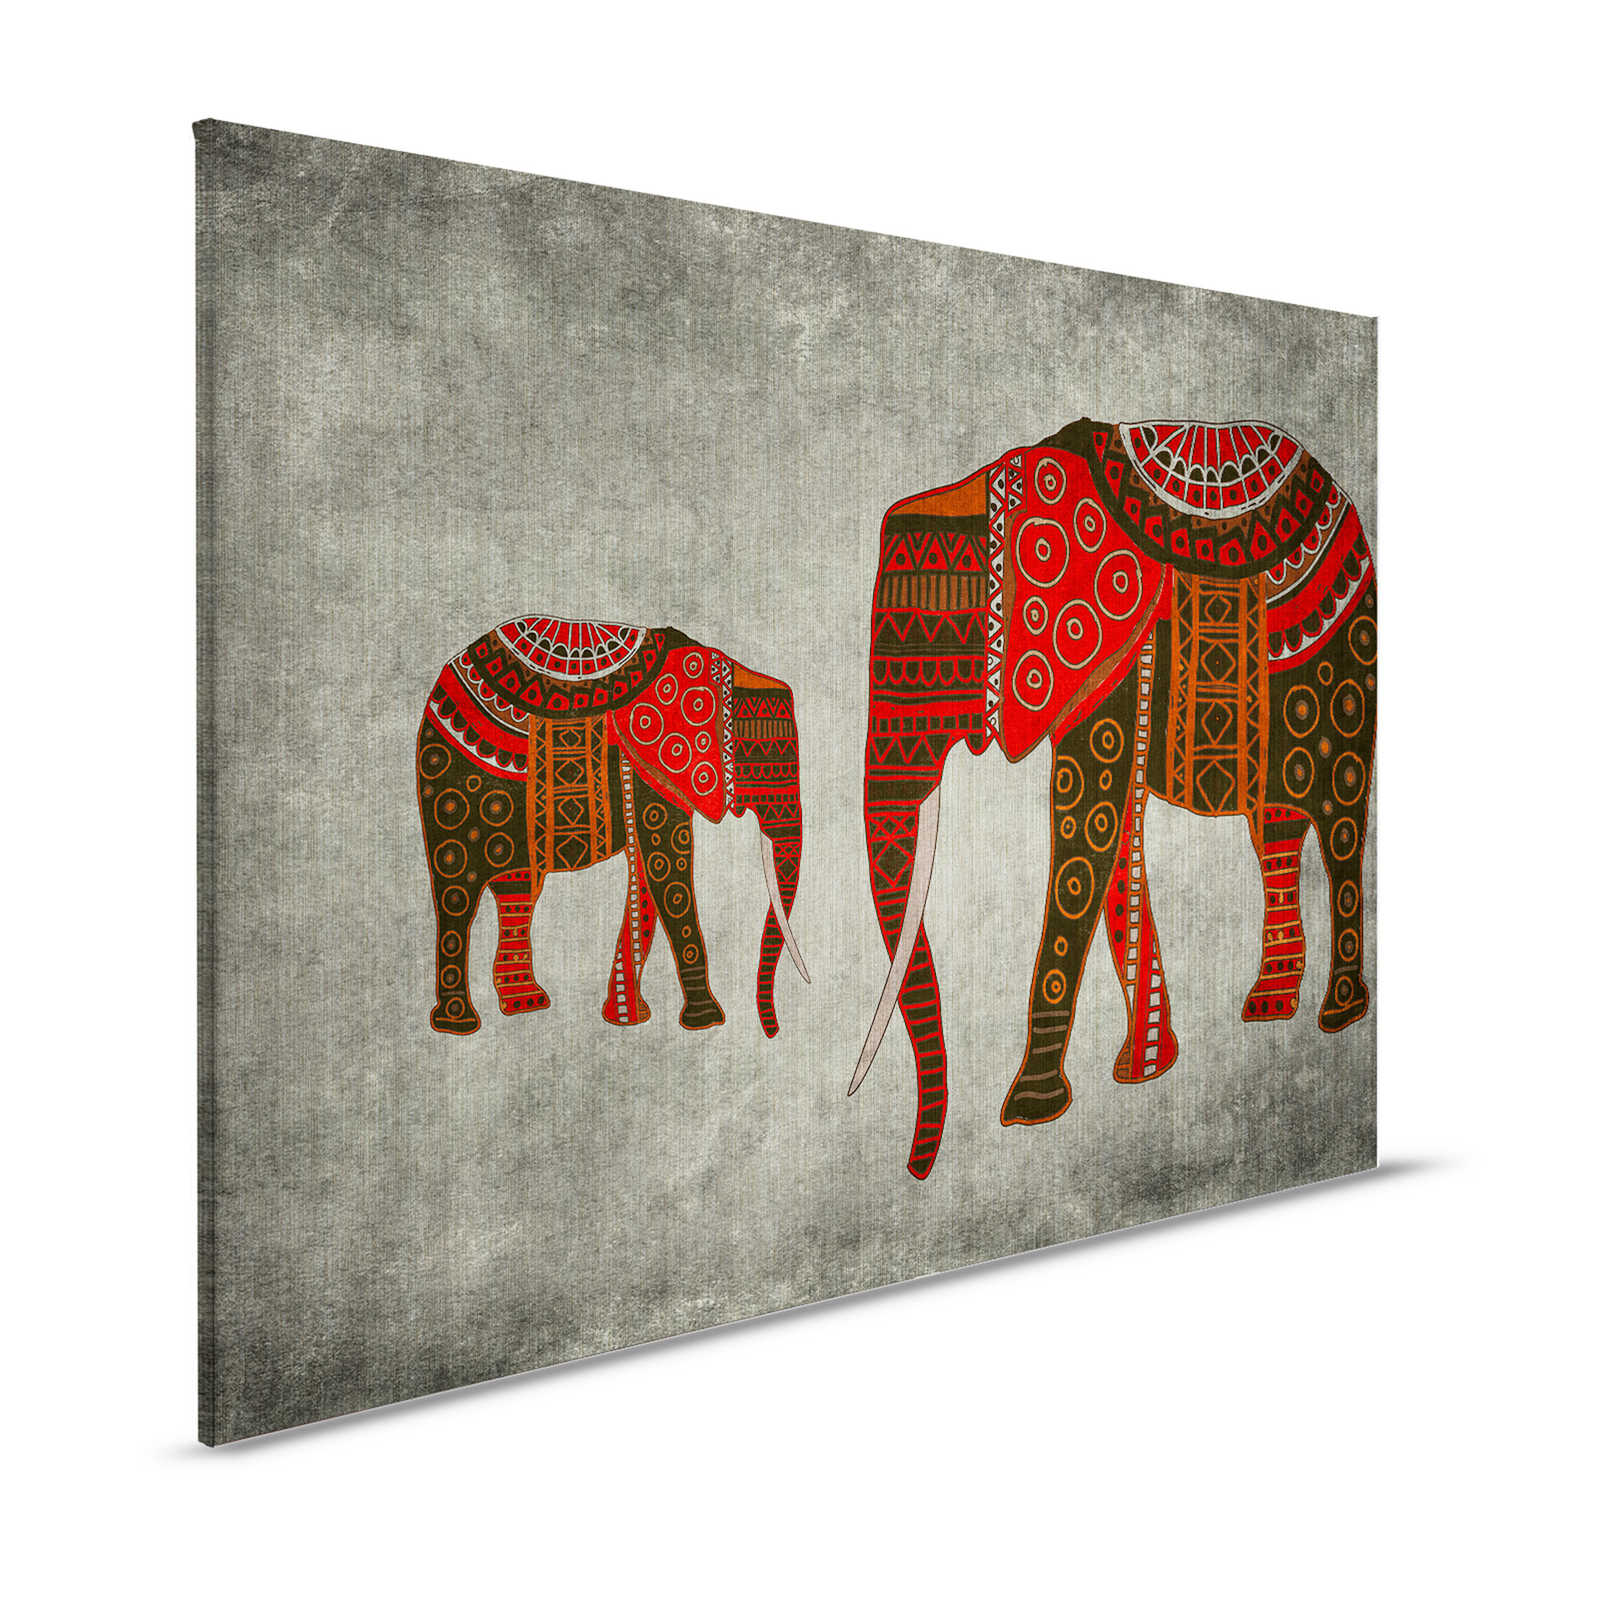 Nairobi 4 - Olifanten canvas schilderij met etnische patronen - 1.20 m x 0.80 m
